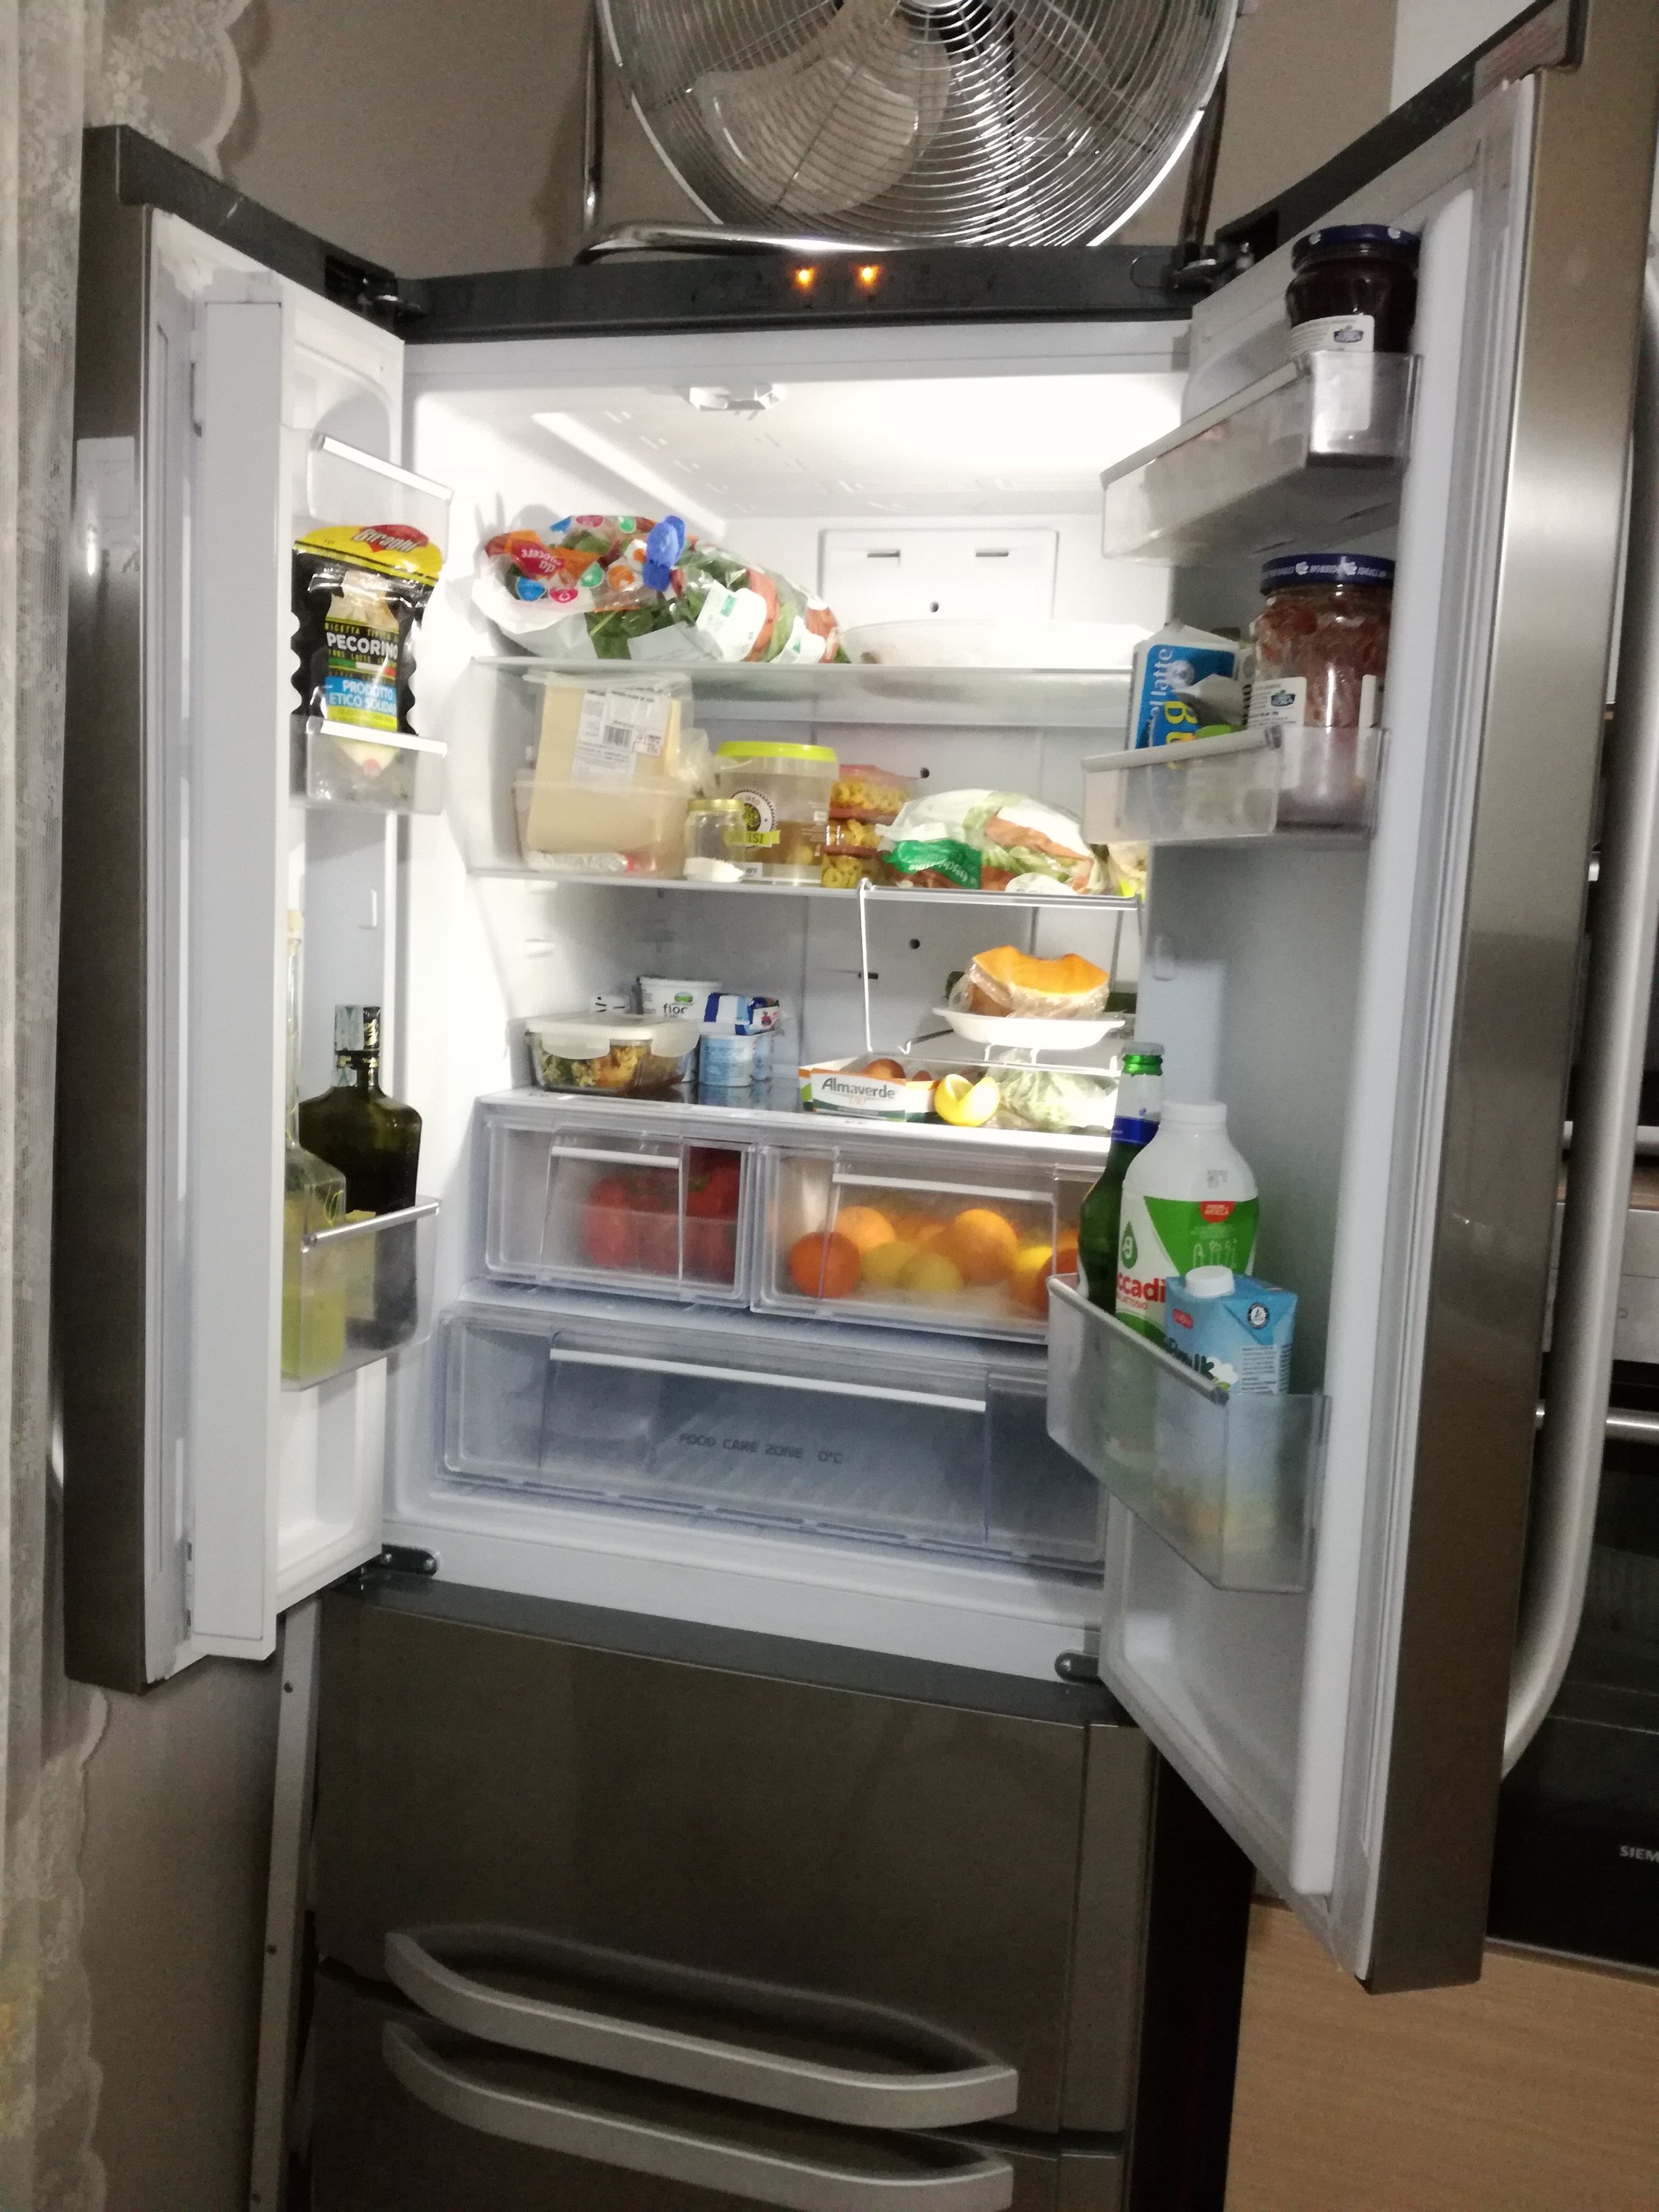 Perché alcuni frigoriferi hanno un cassetto per la carne?